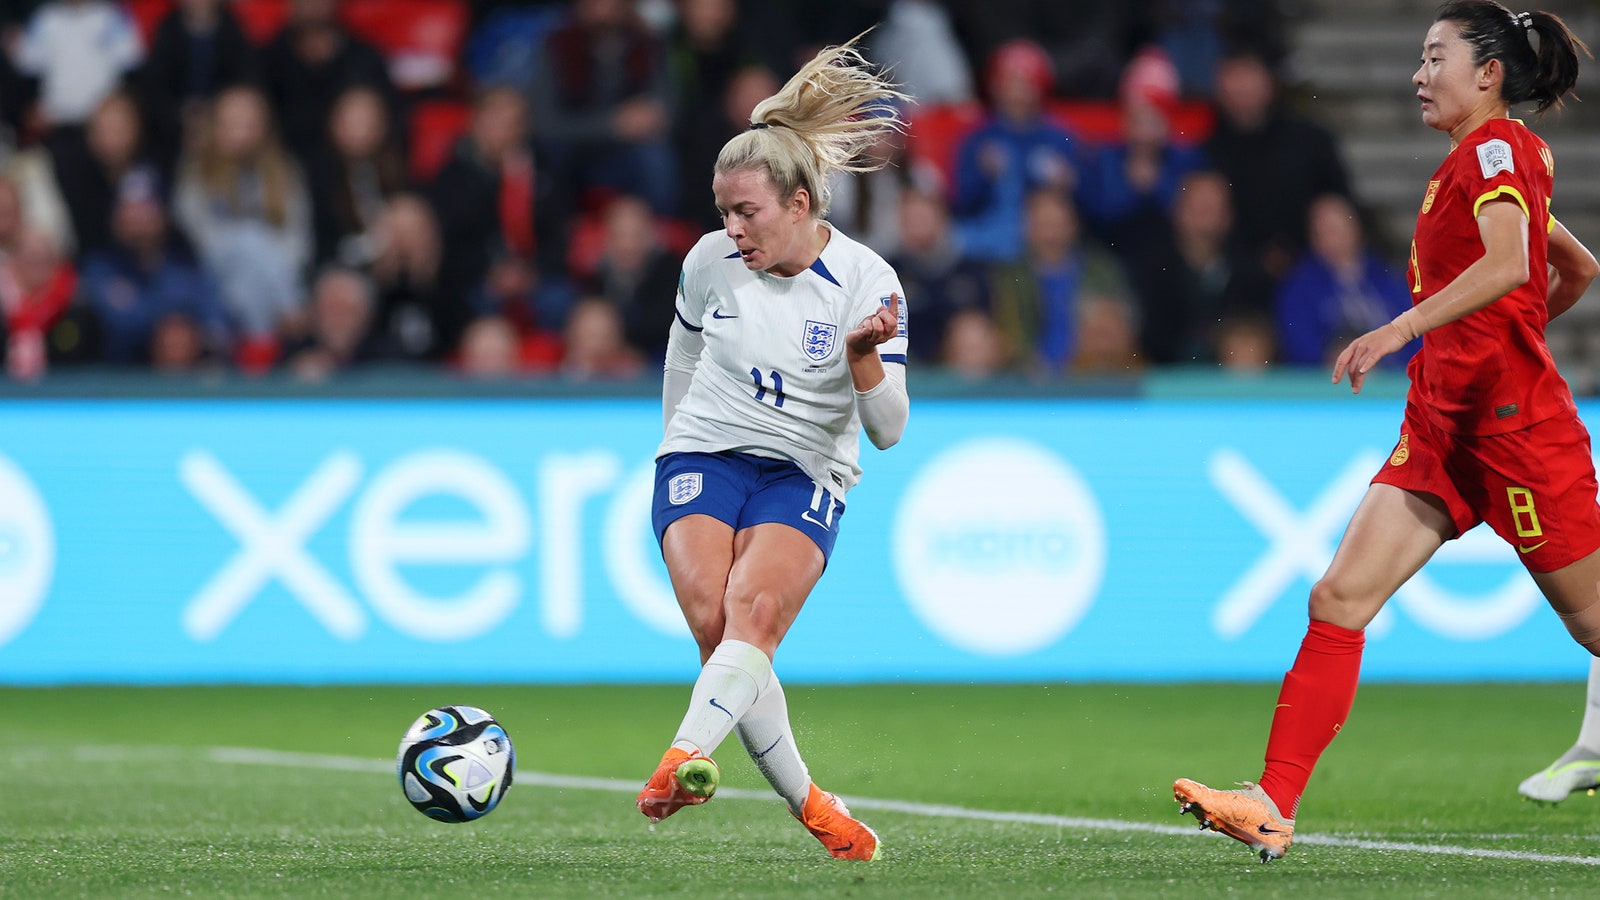 England's Lauren Hemp scores goal vs. China in 26'